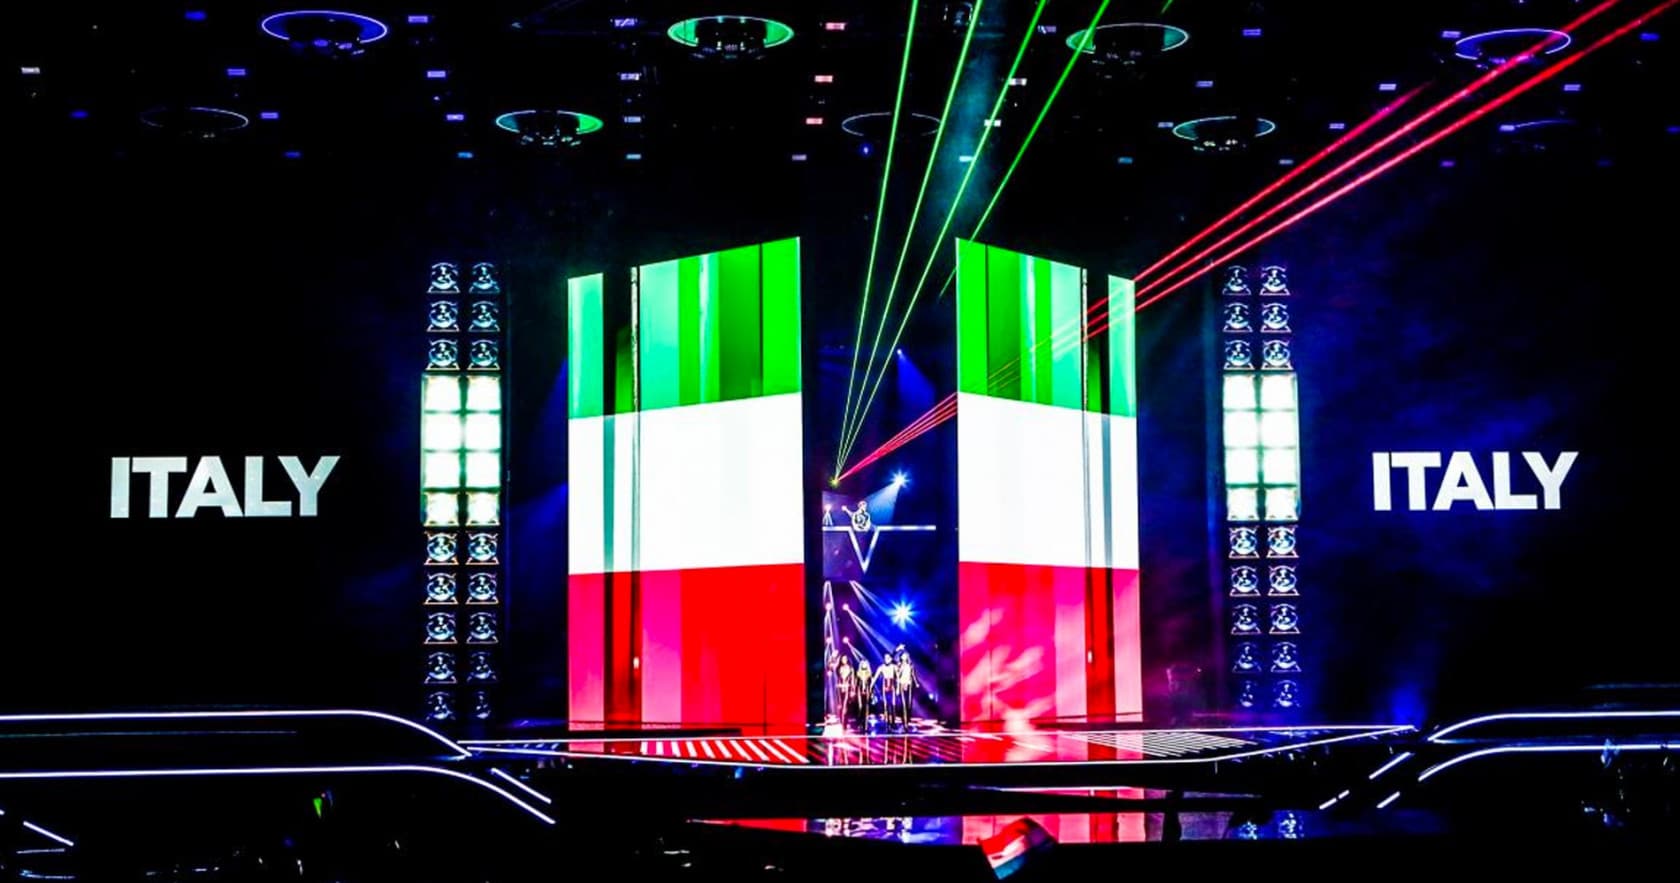 Olaszország és a Måneskin belépője a 2021-es rotterdami Eurovíziós Dalfesztivál döntőjének Flag Parádéján - Eurovision.tv fotója